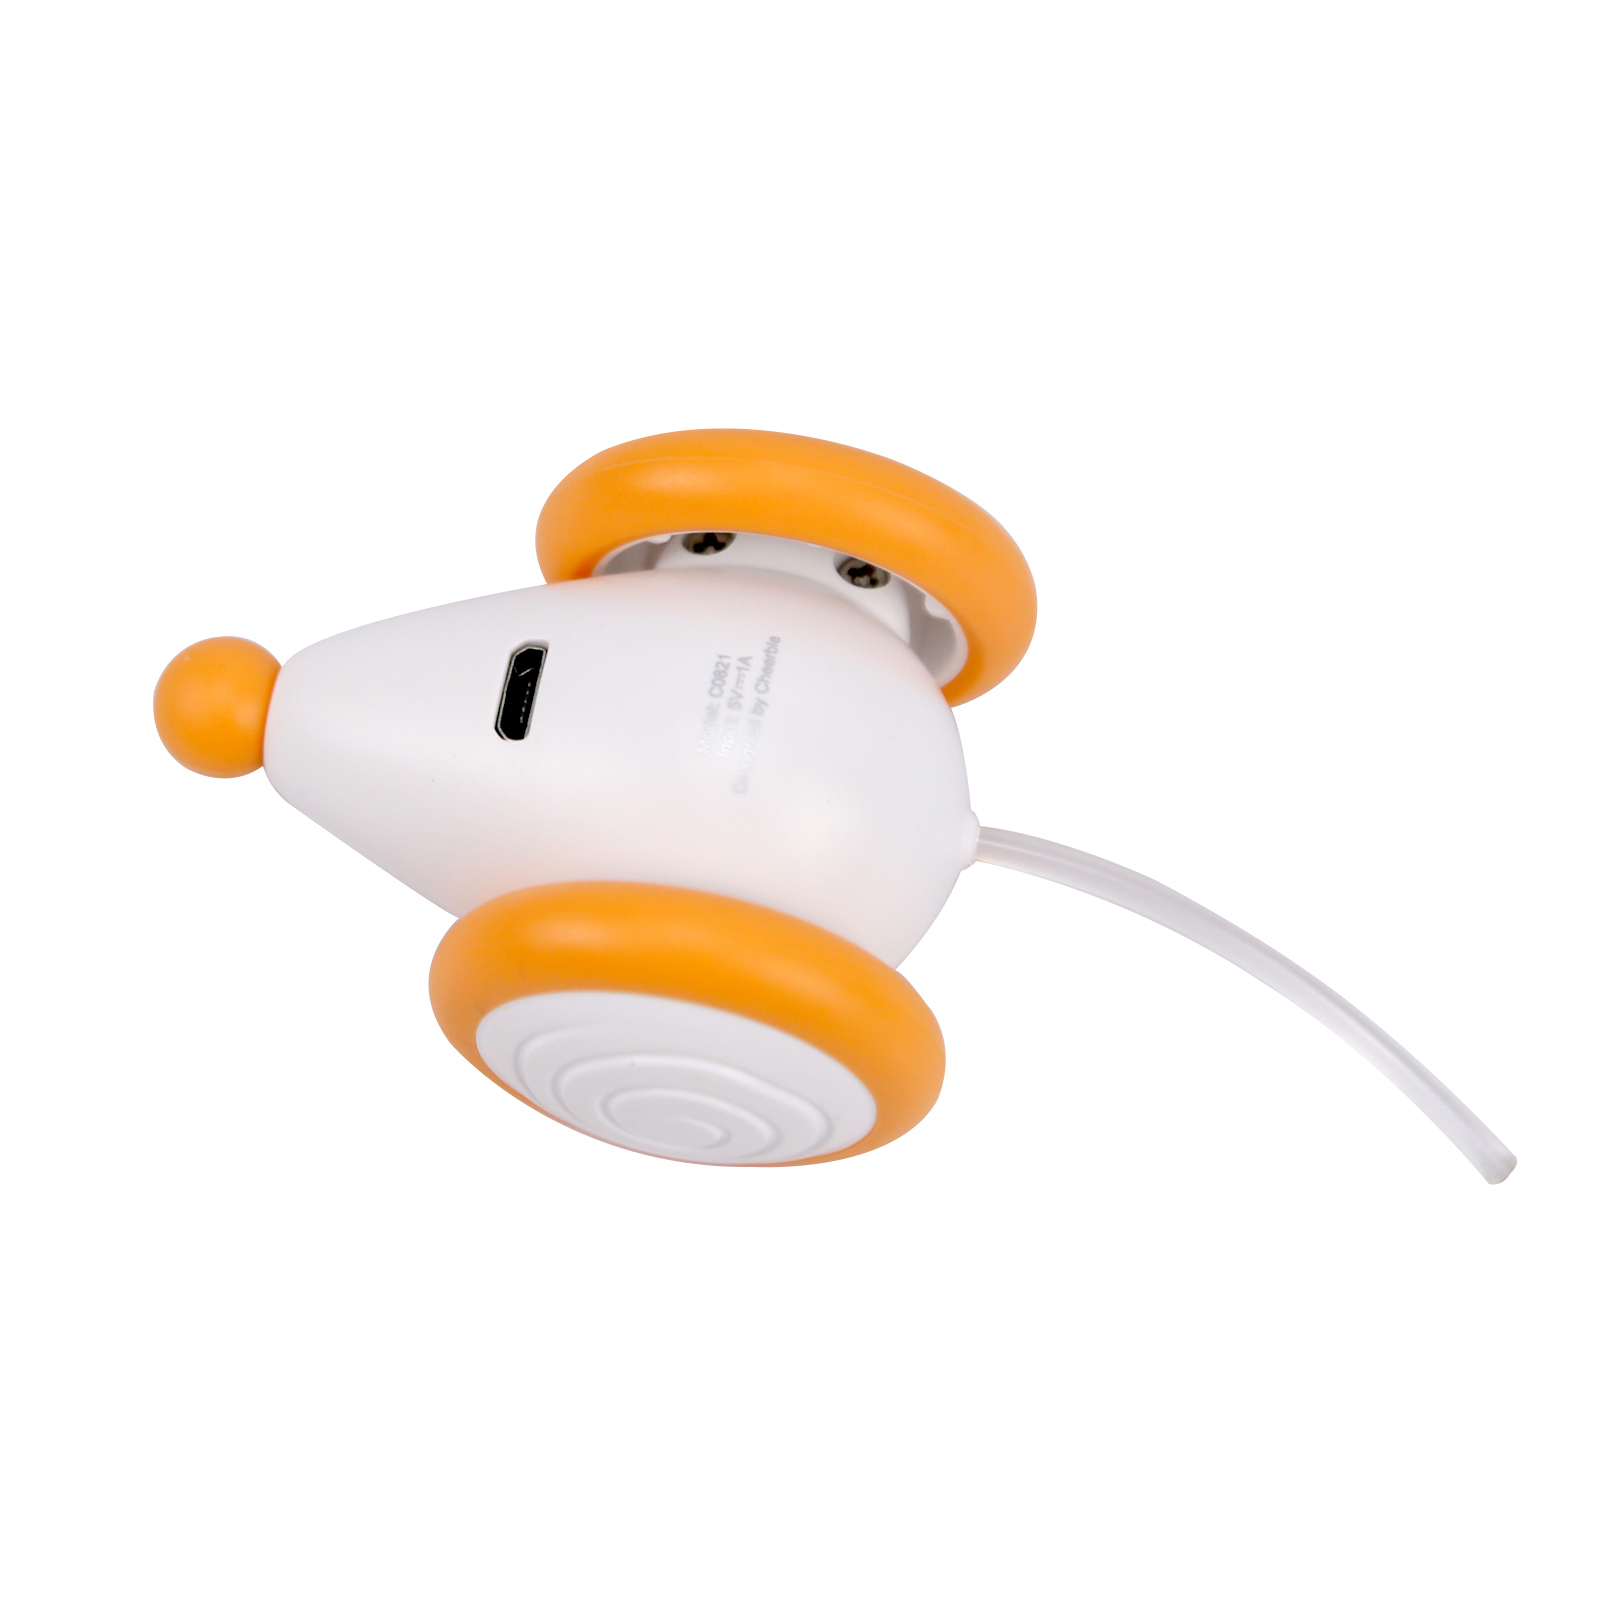 Interaktives für Katze USB-Aufladung INF Haustier-Spielzeug Spielzeug Orange/Weiß Maus